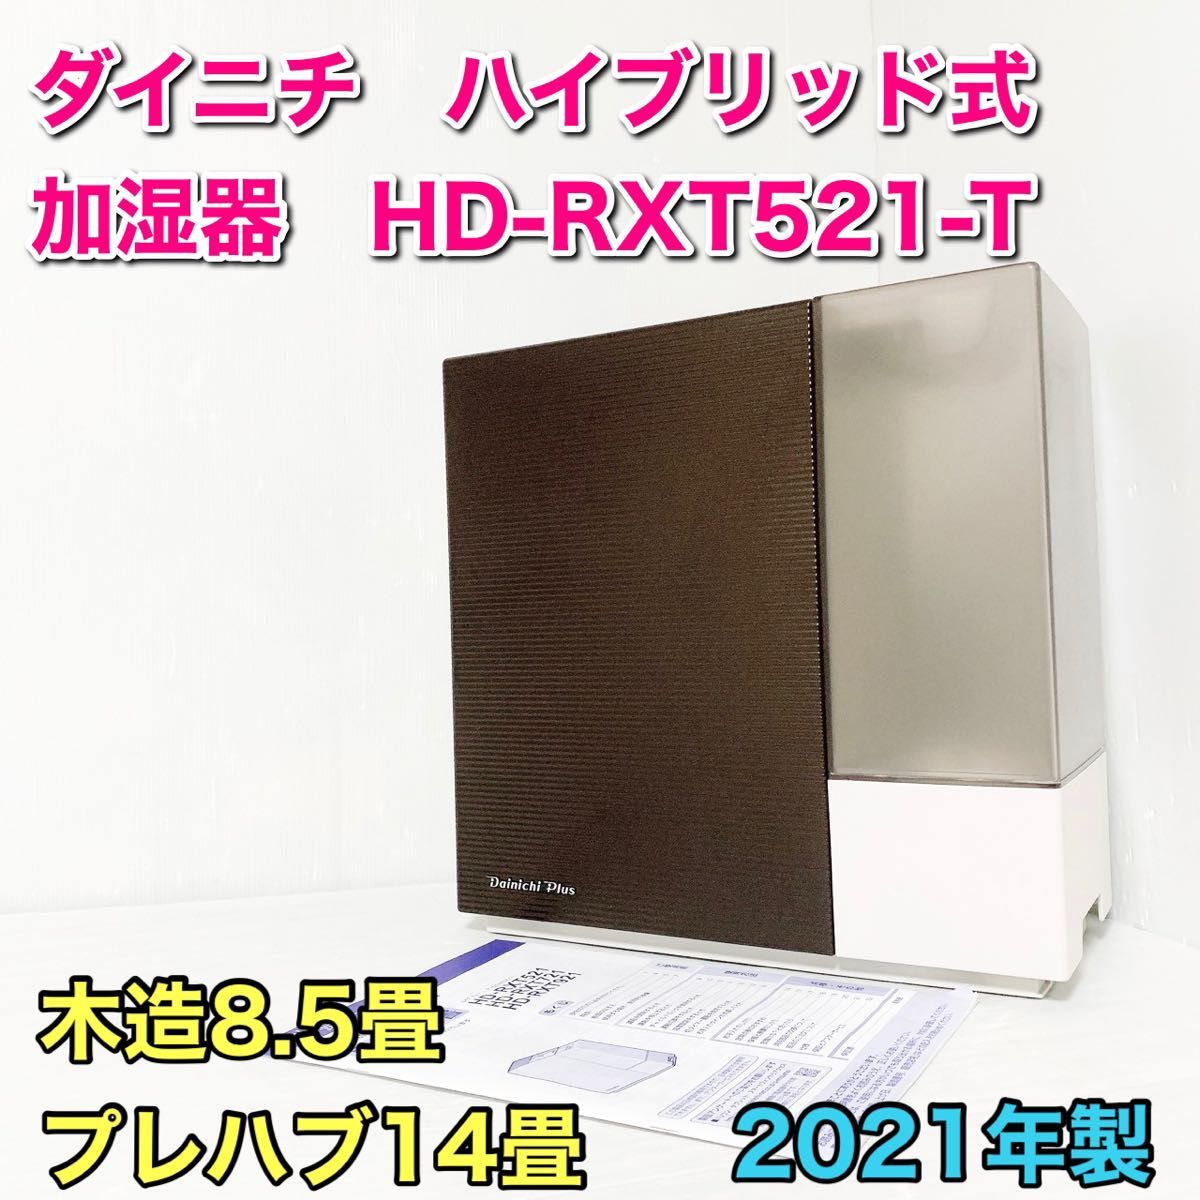 ダイニチ HD-RXT521-T ショコラブラウン ハイブリッド式加湿器 - majorbrands.co.in